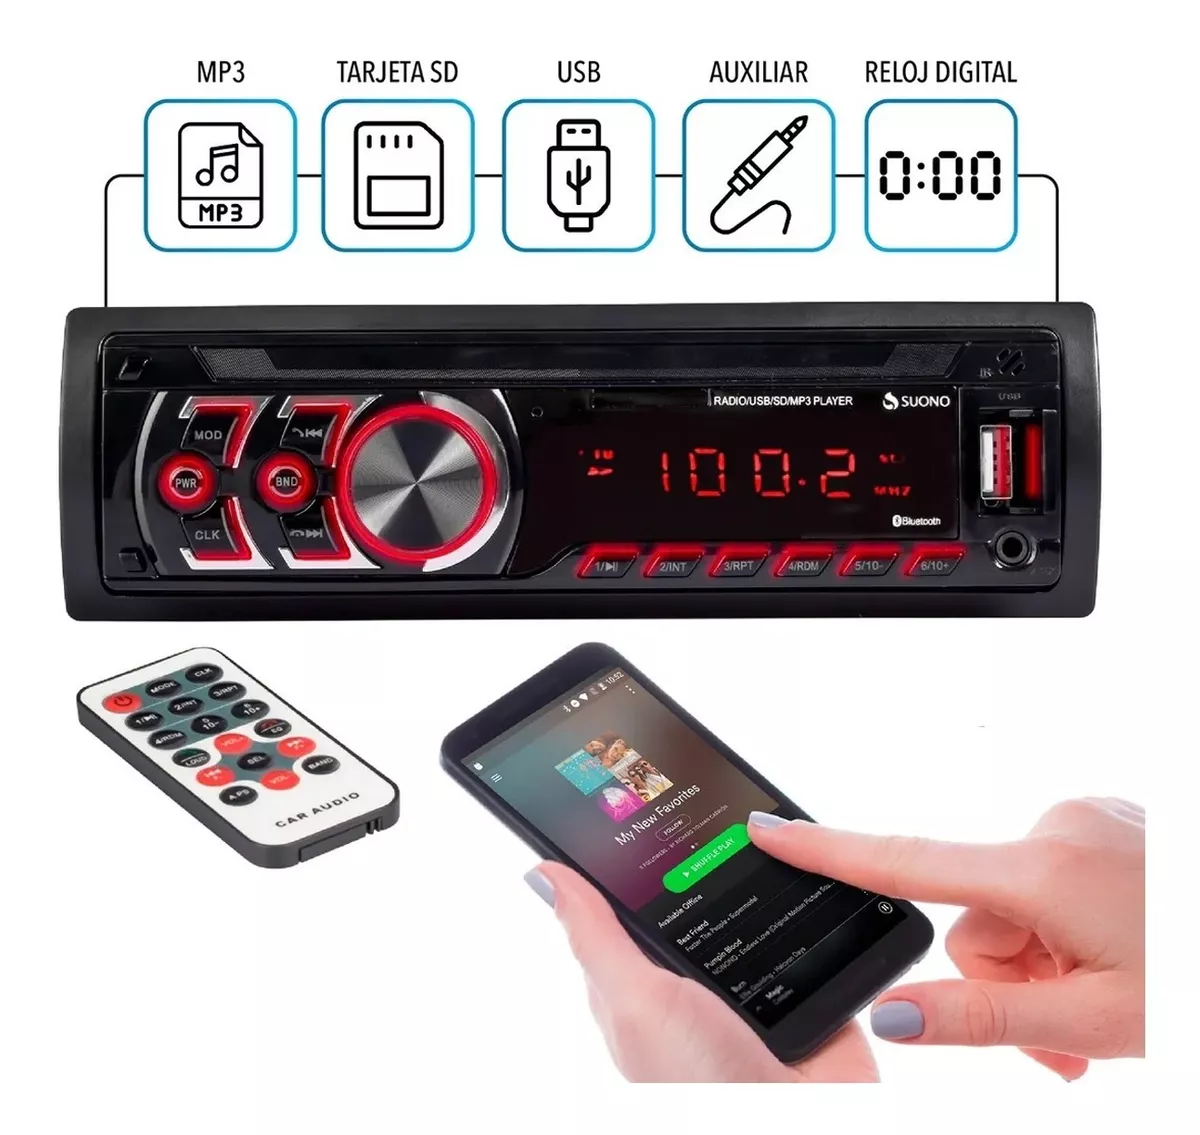 Autoestereo Micro Sd Mp3 Usb Radio Fm Stereo Frente Fijo Bluetooth Manos Libres Potente Sonido + Control Remoto